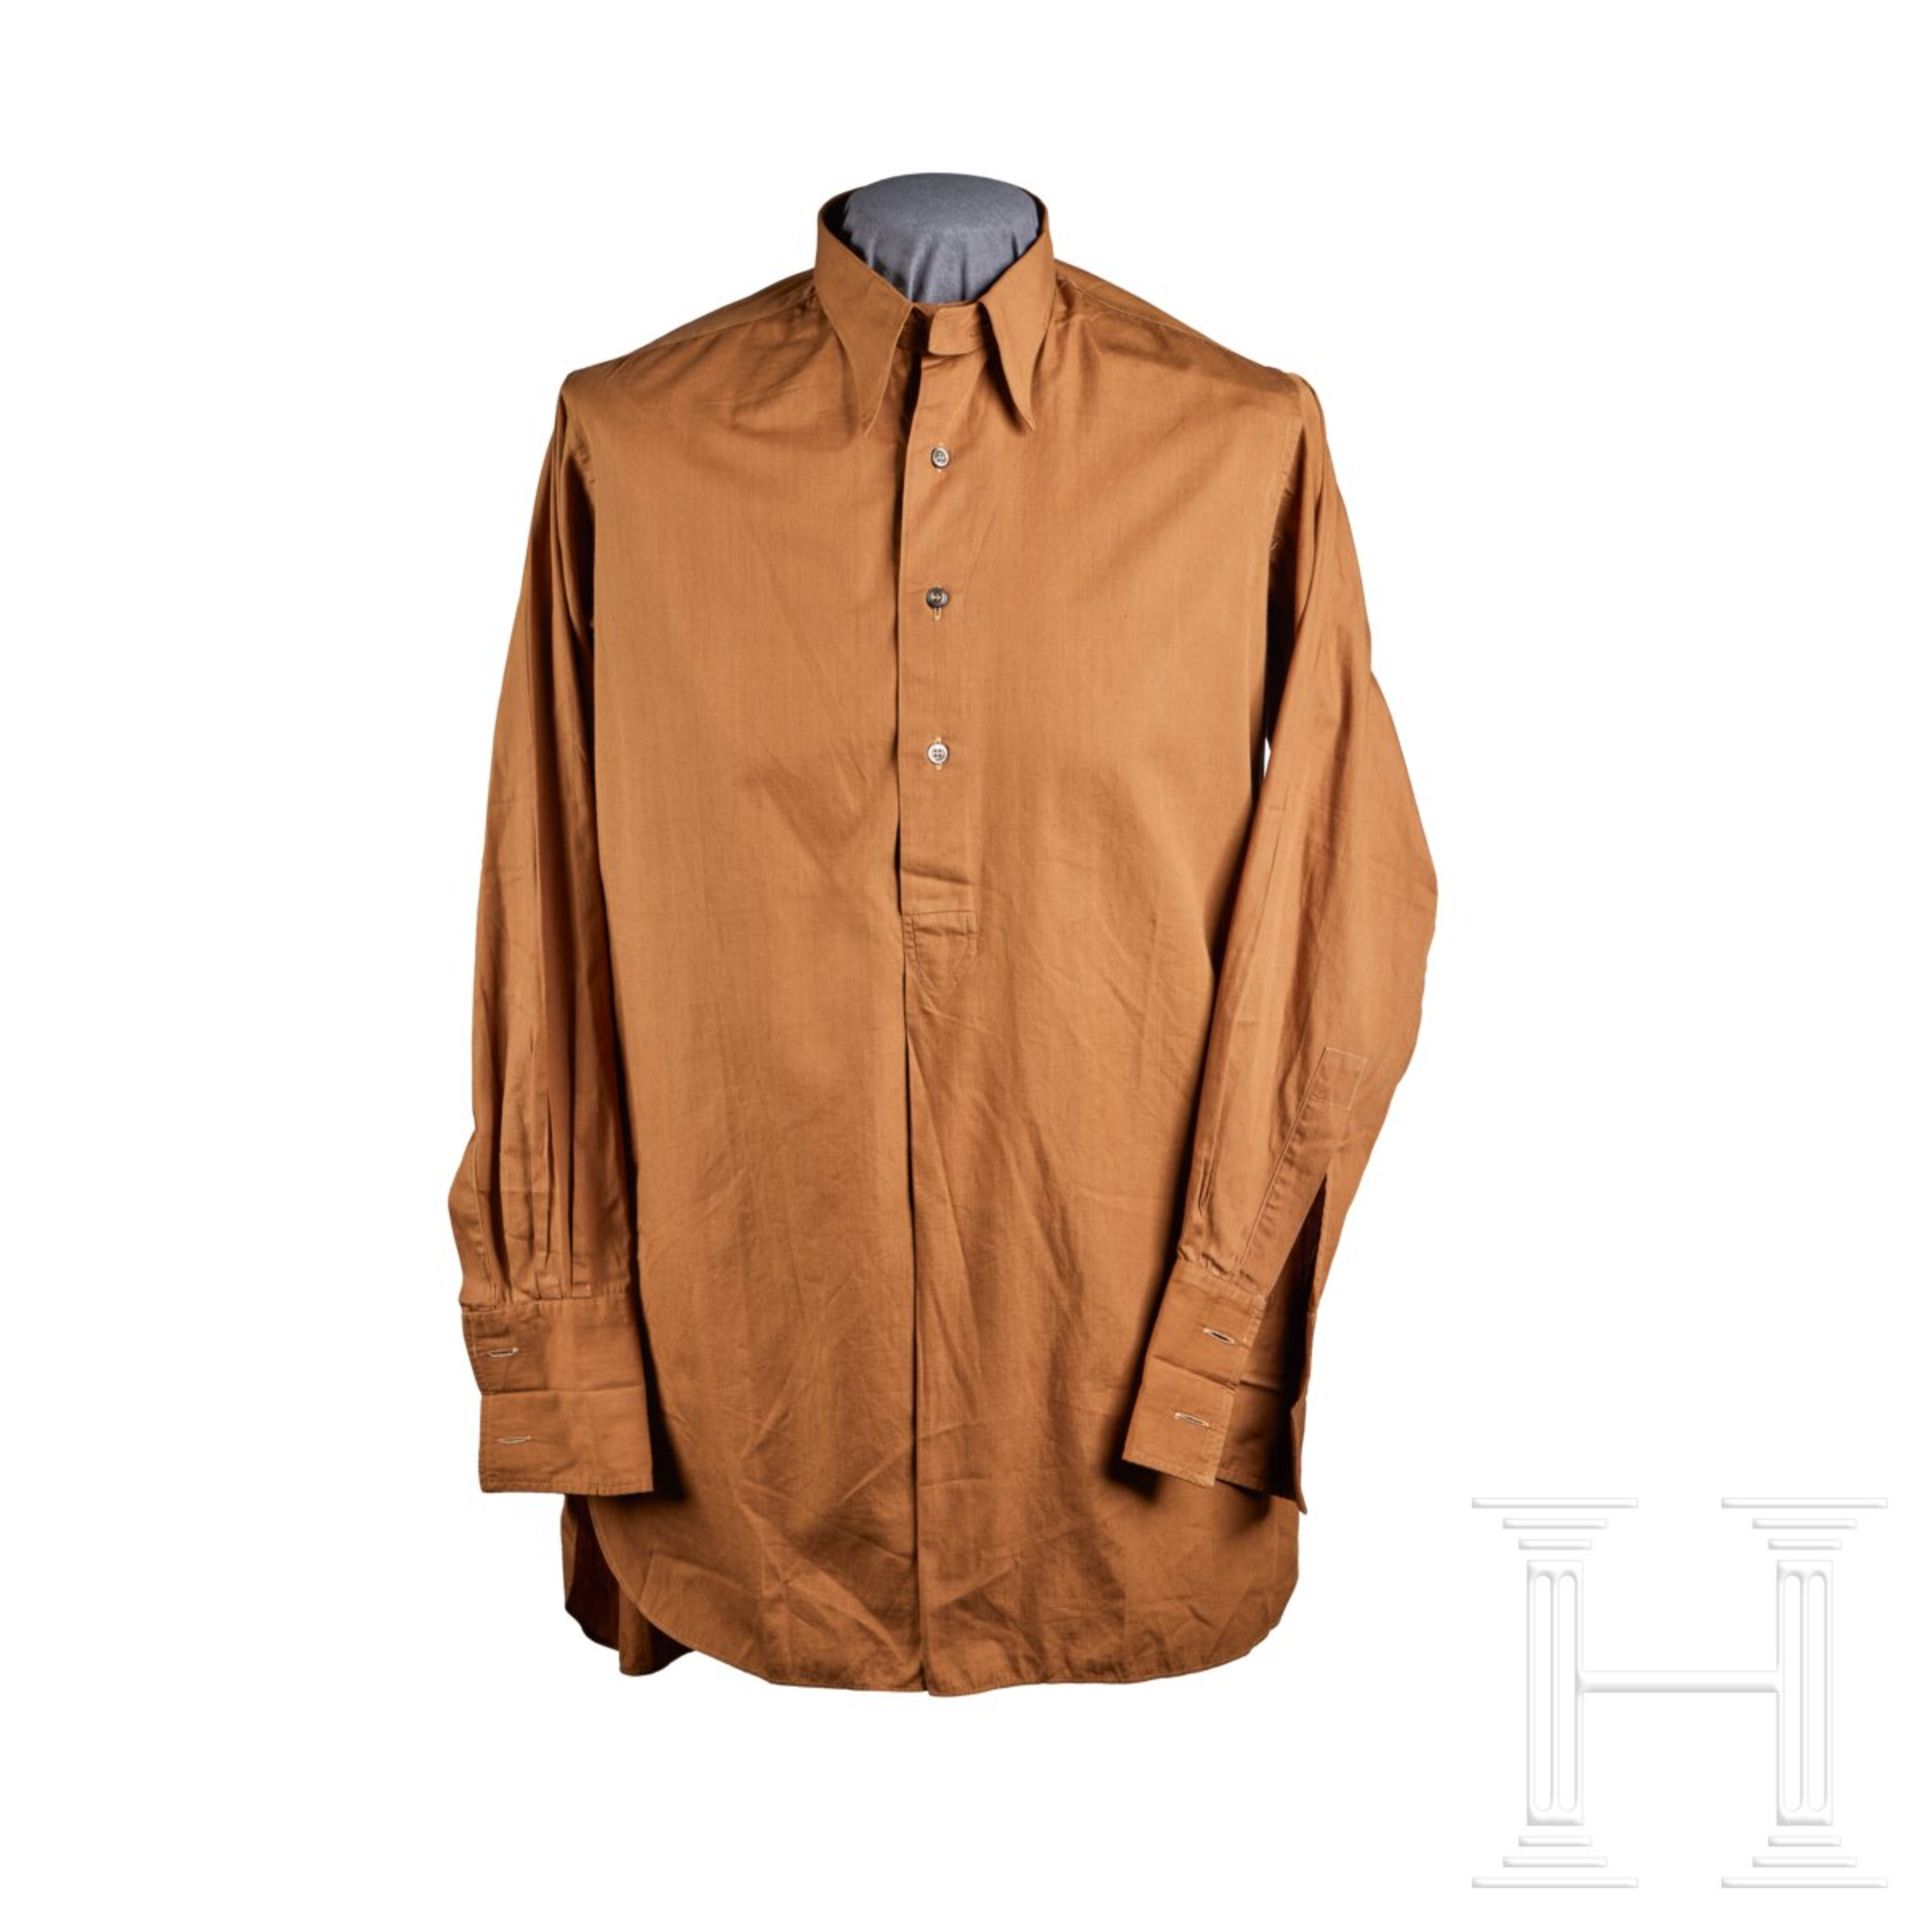 A Brown Uniform Shirt for SS-Verfügungstruppe